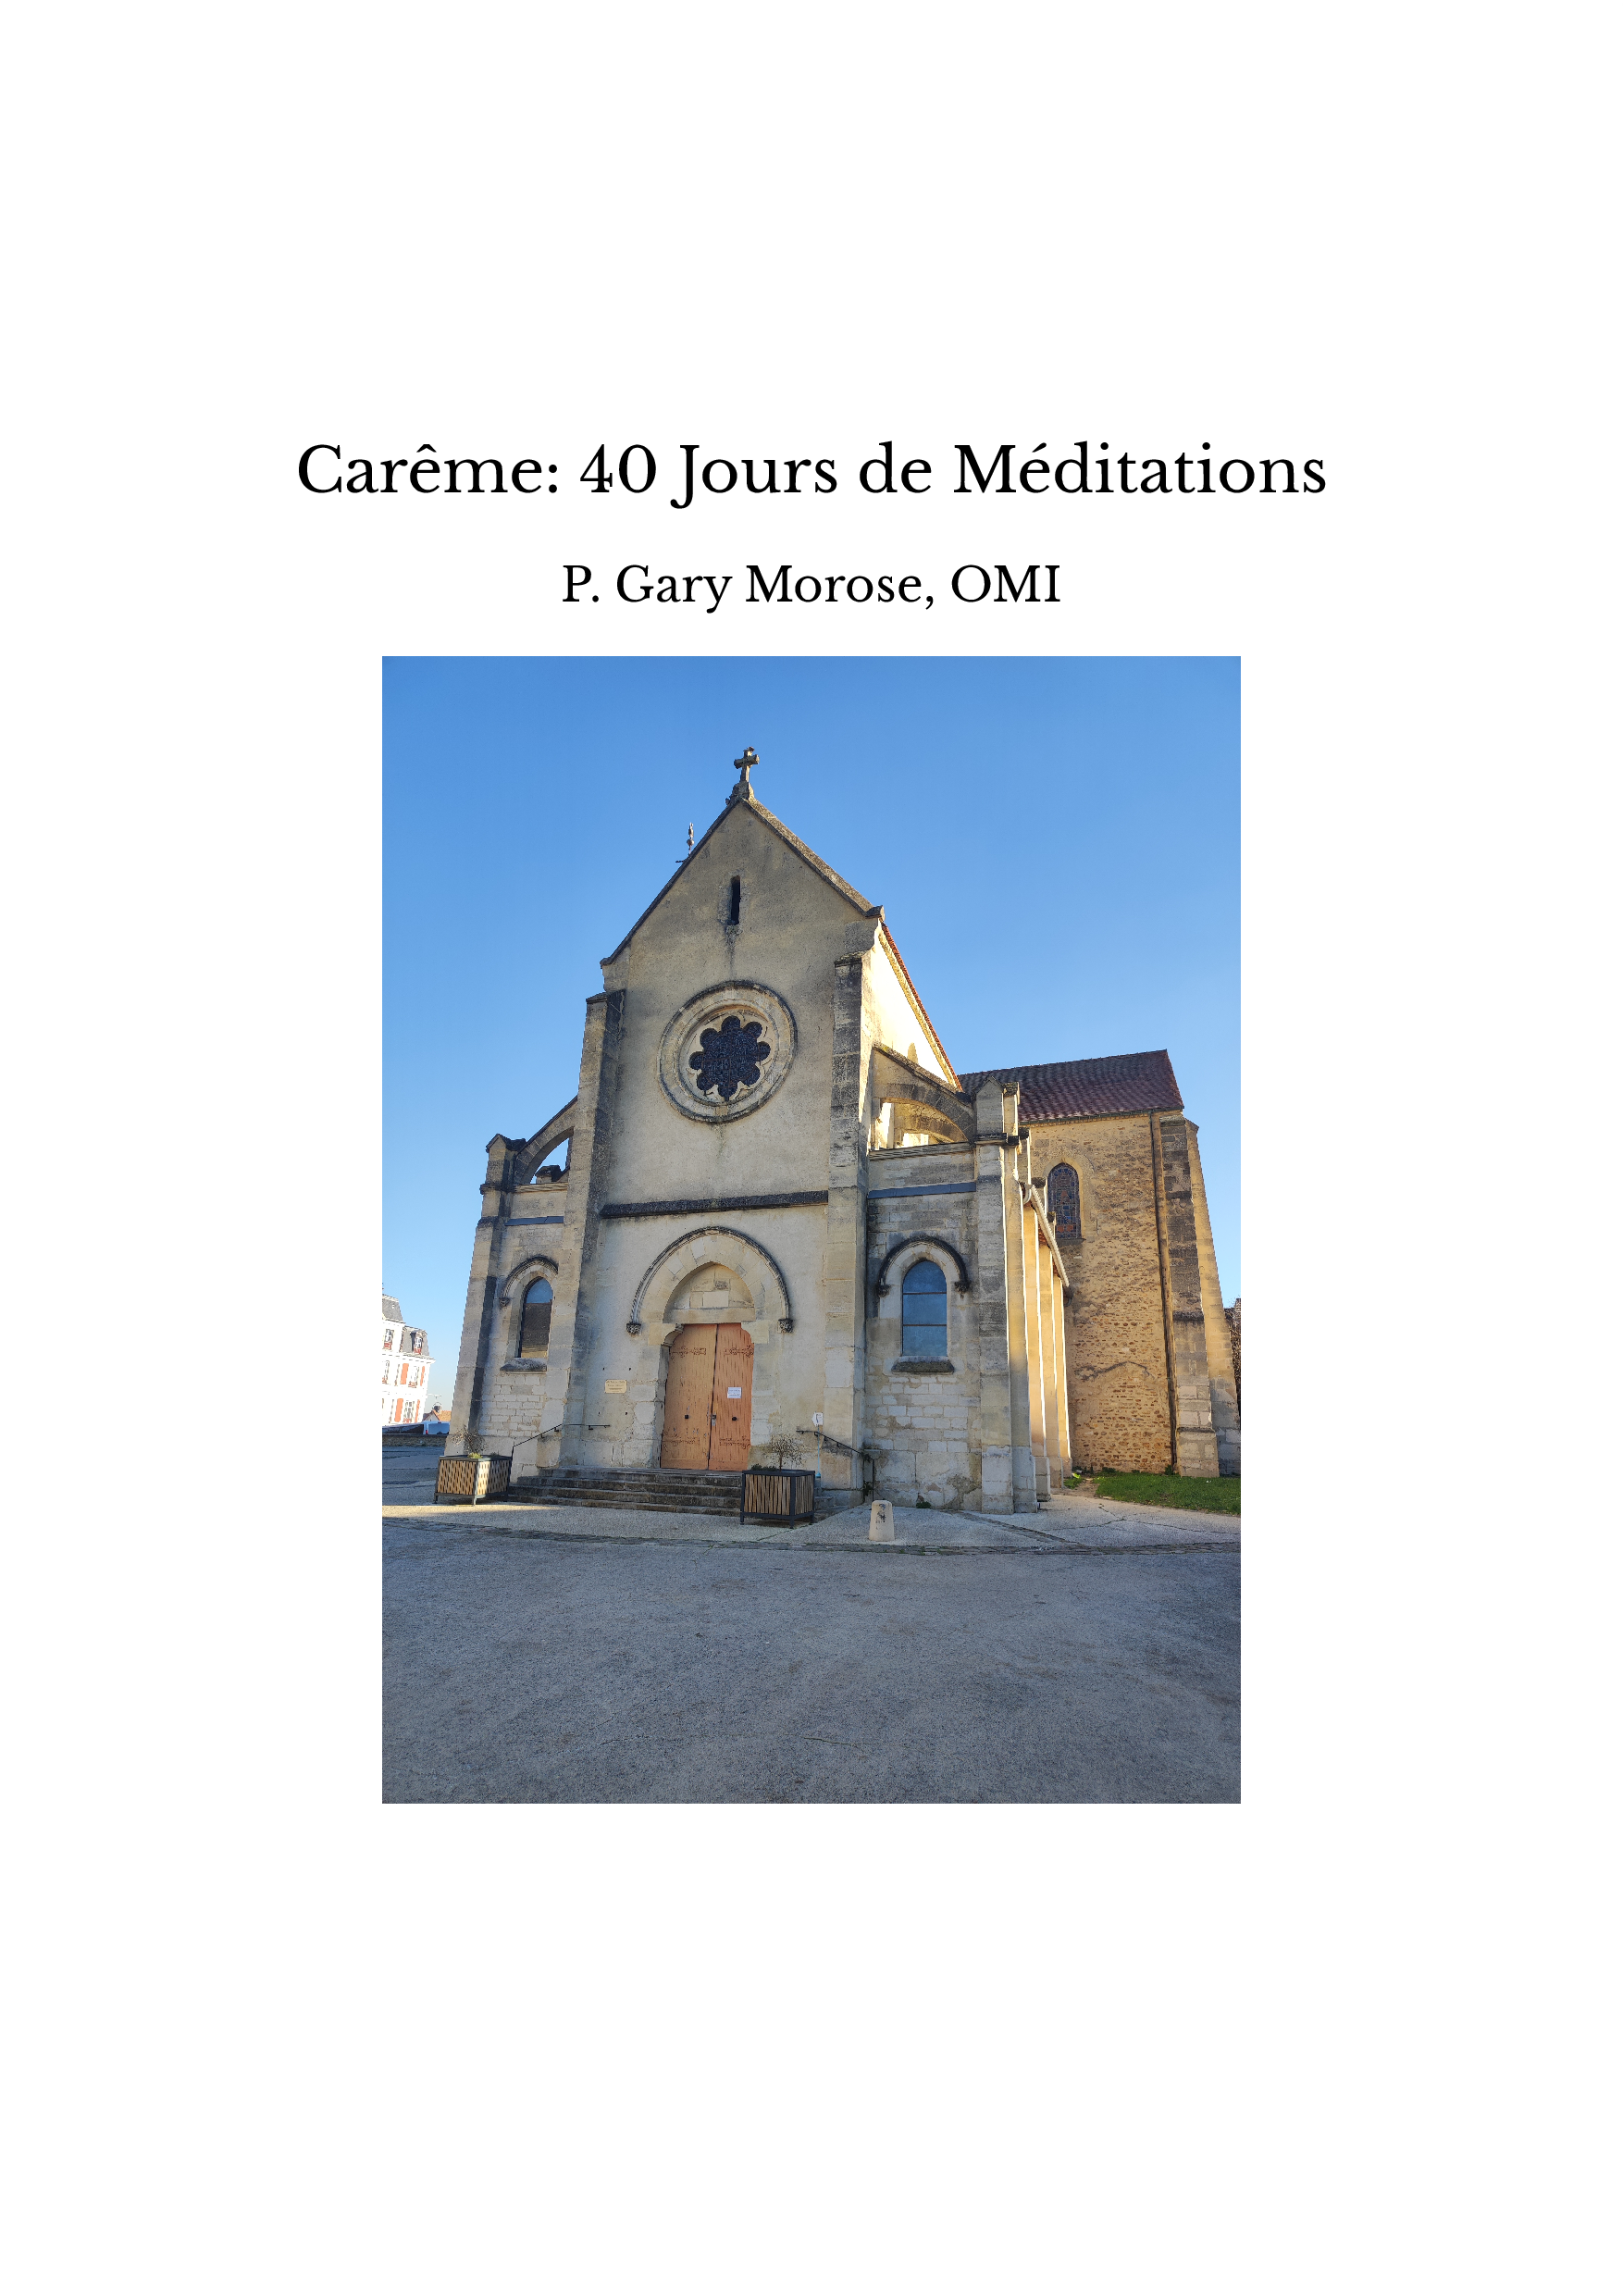 Carême: 40 Jours de Méditations